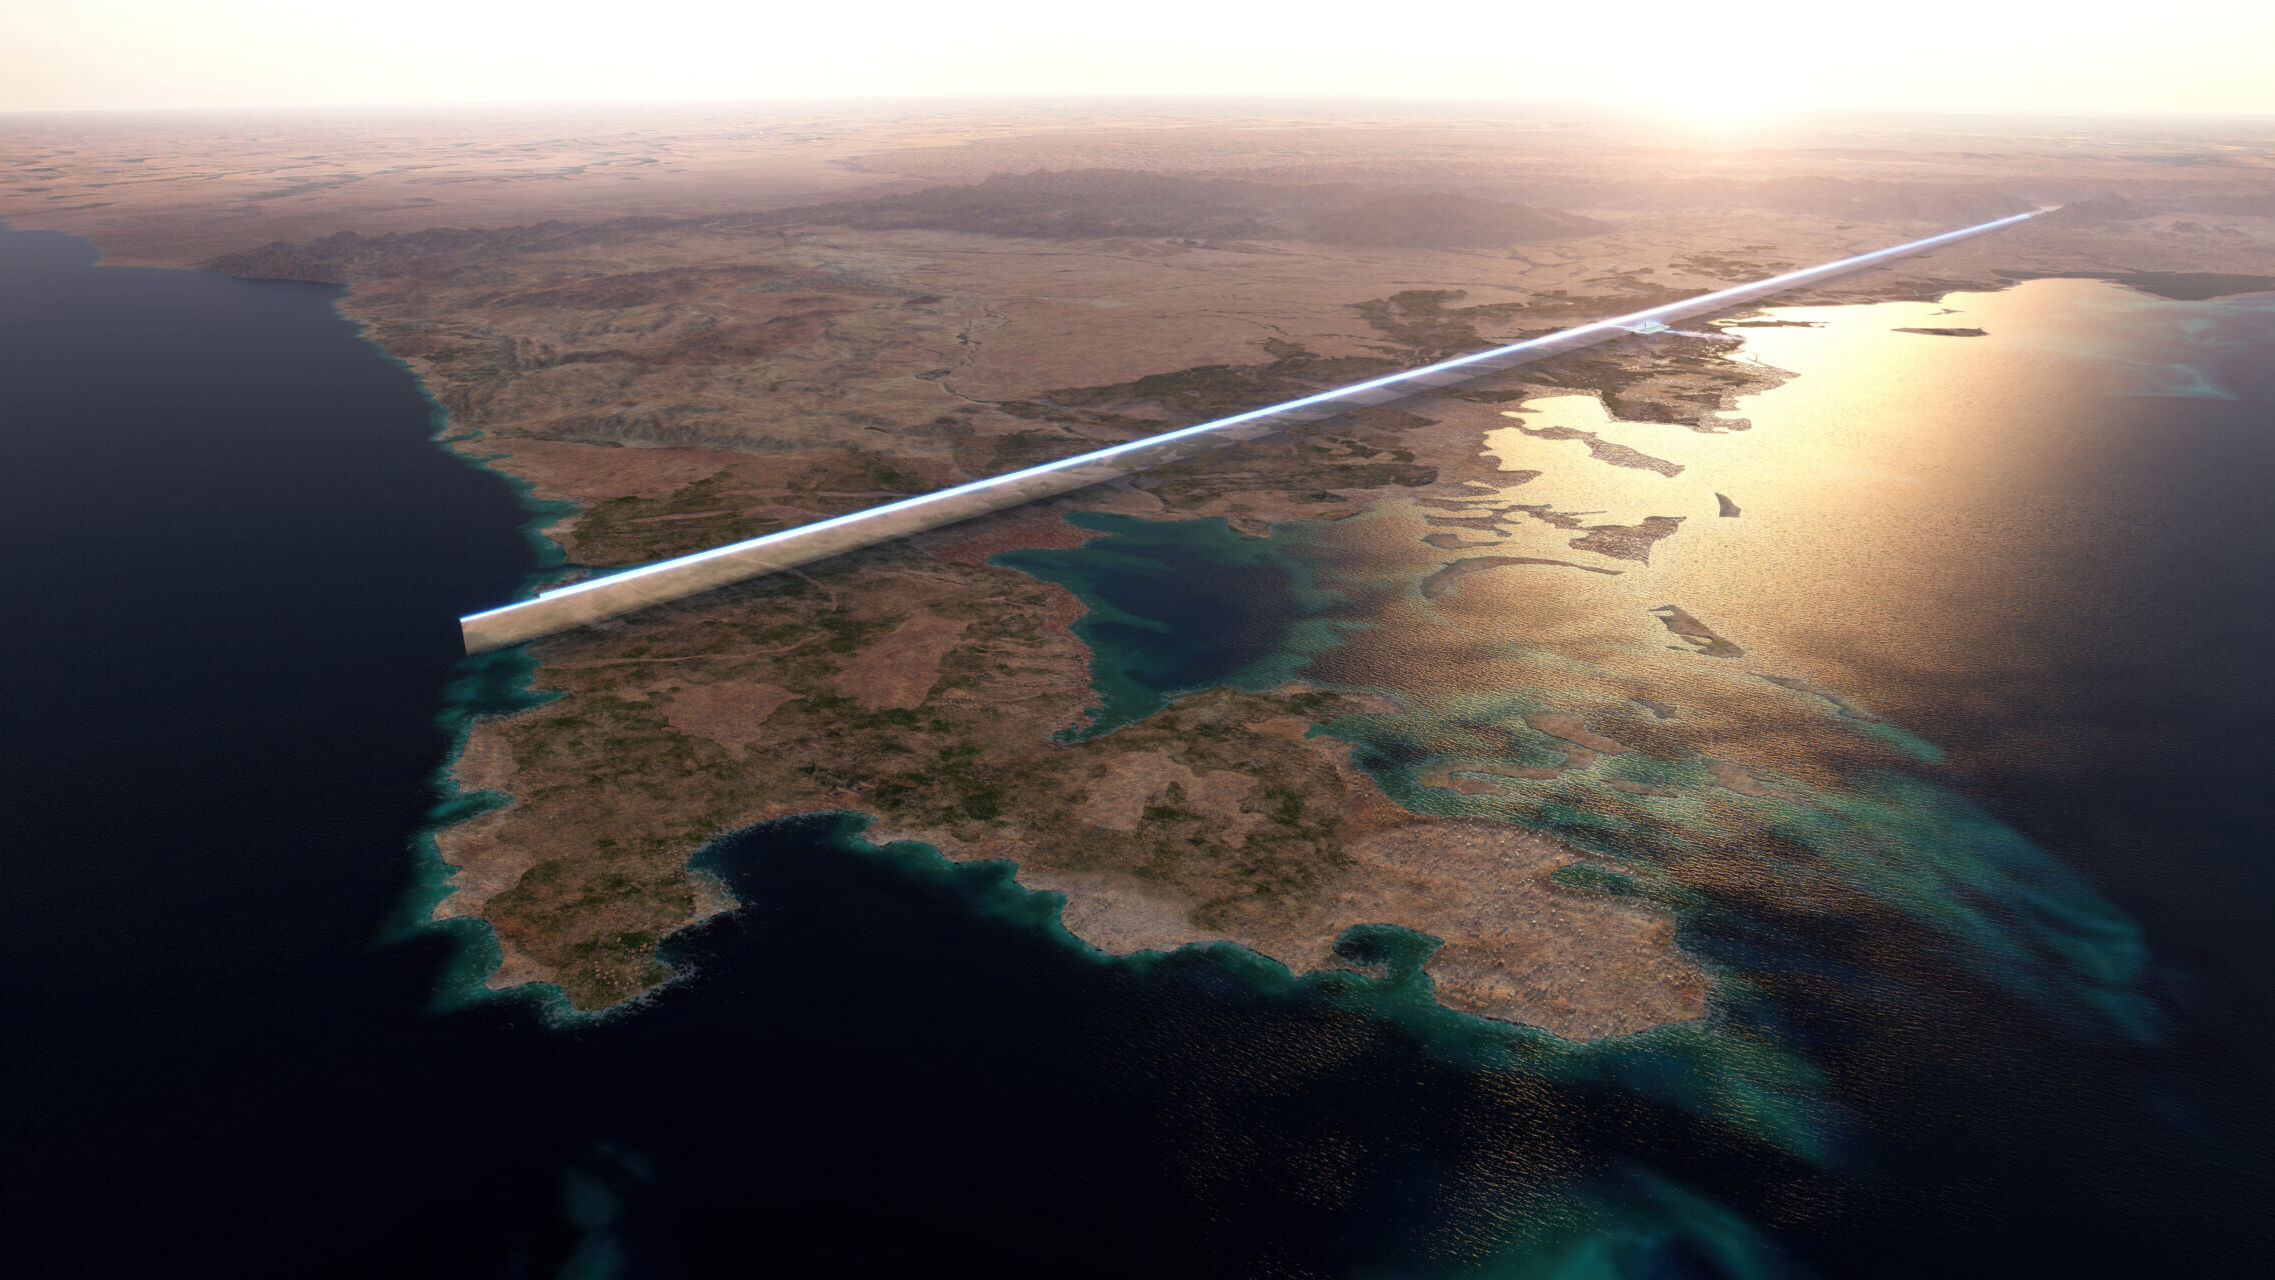 170 किमी लंबा, सऊदी अरब में "द लाइन" दुनिया का पहला रैखिक शहर होगा